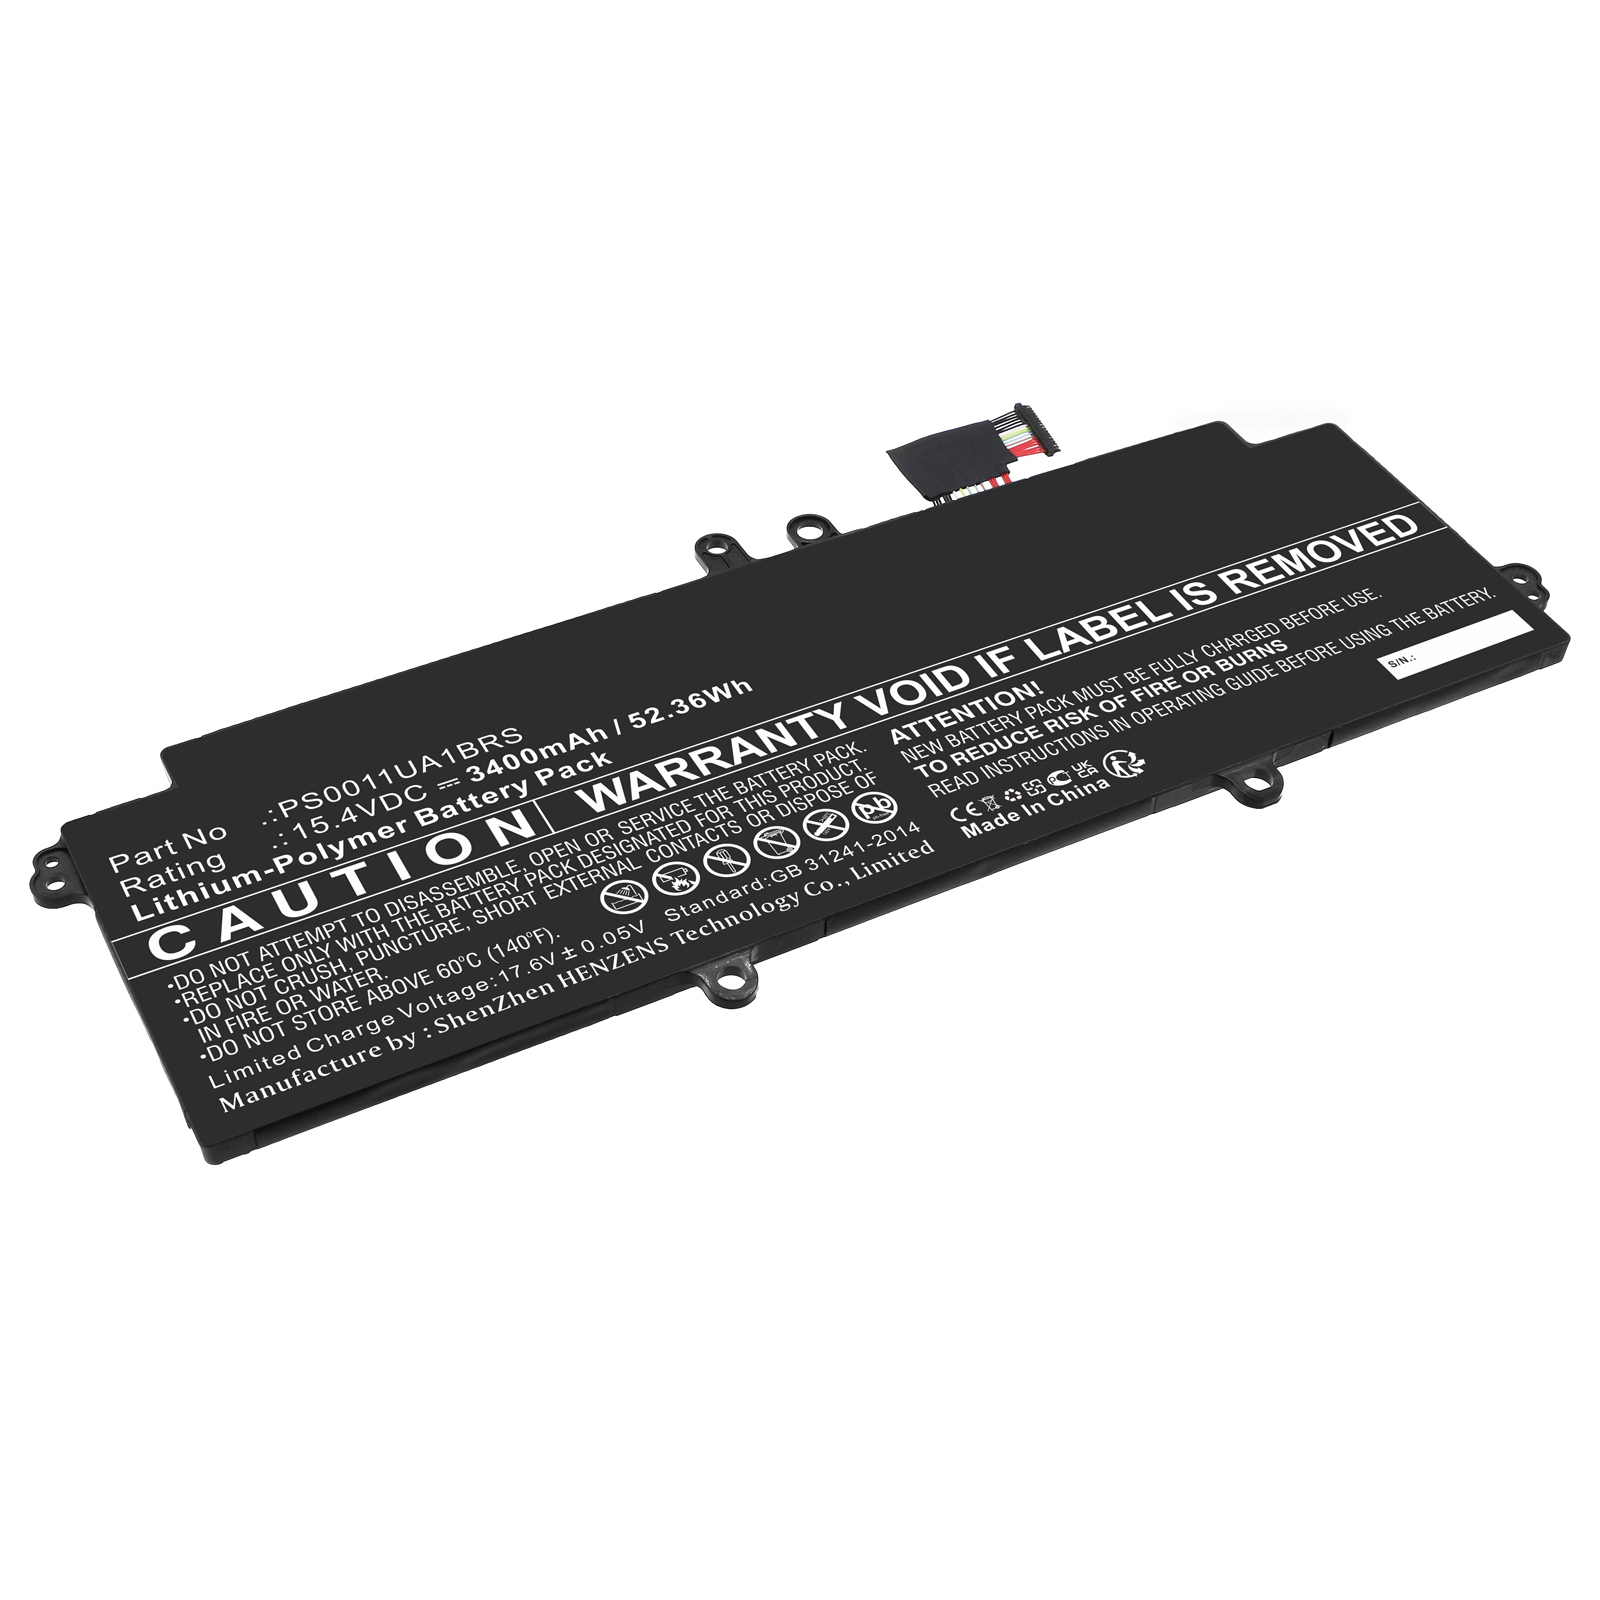 Synergy Digital Laptop Battery, Compatible with Dynabook PS0011UA1BRS Laptop Battery (Li-Pol, 15.4V, 3400mAh)